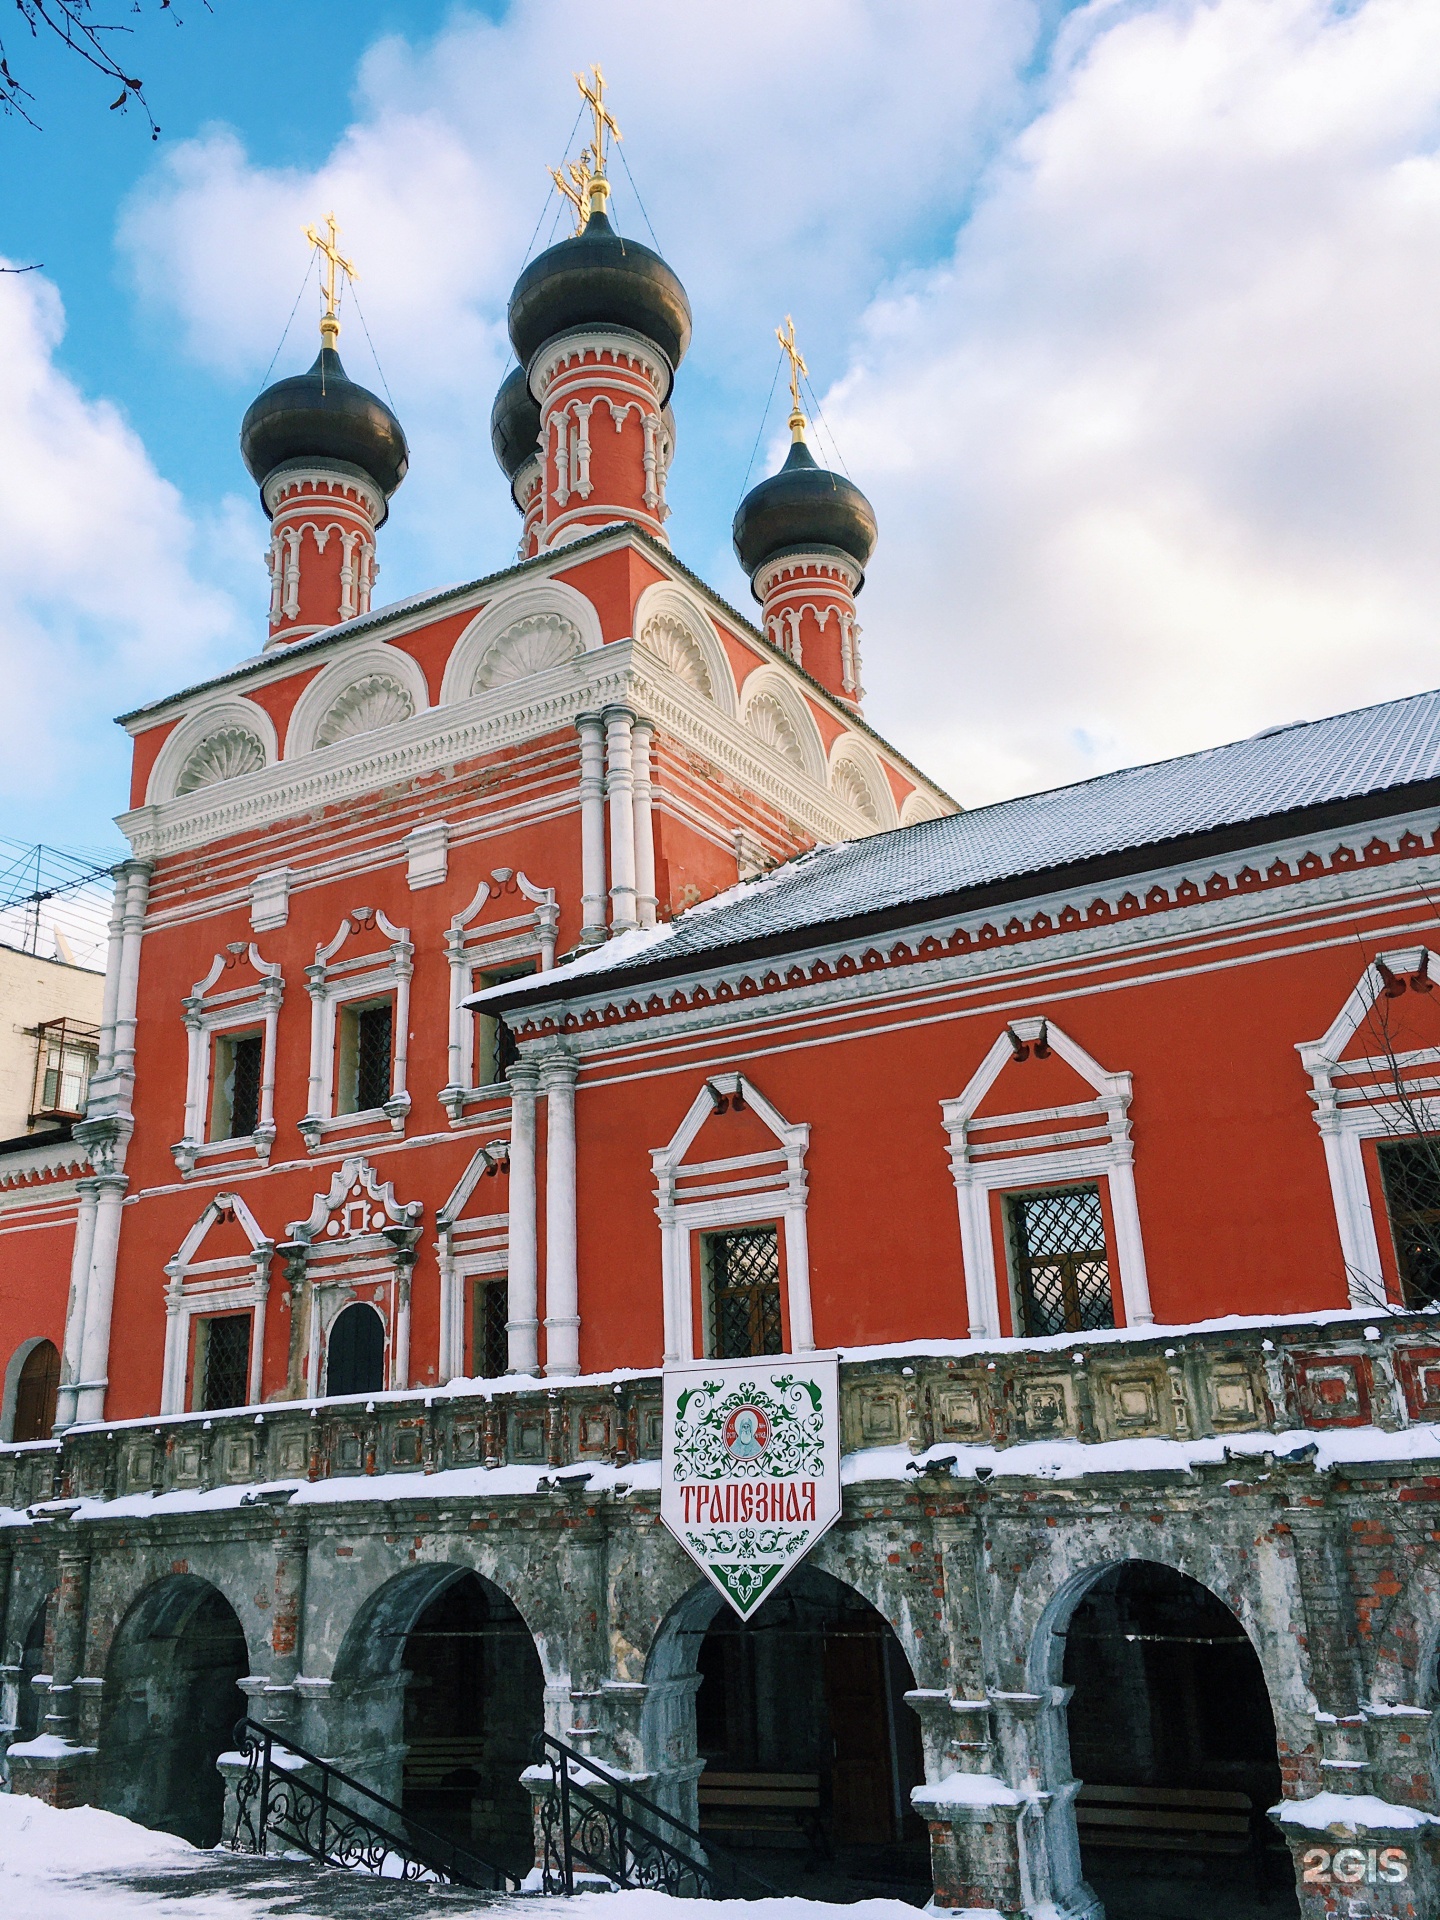 мужской монастырь в москве на петровке